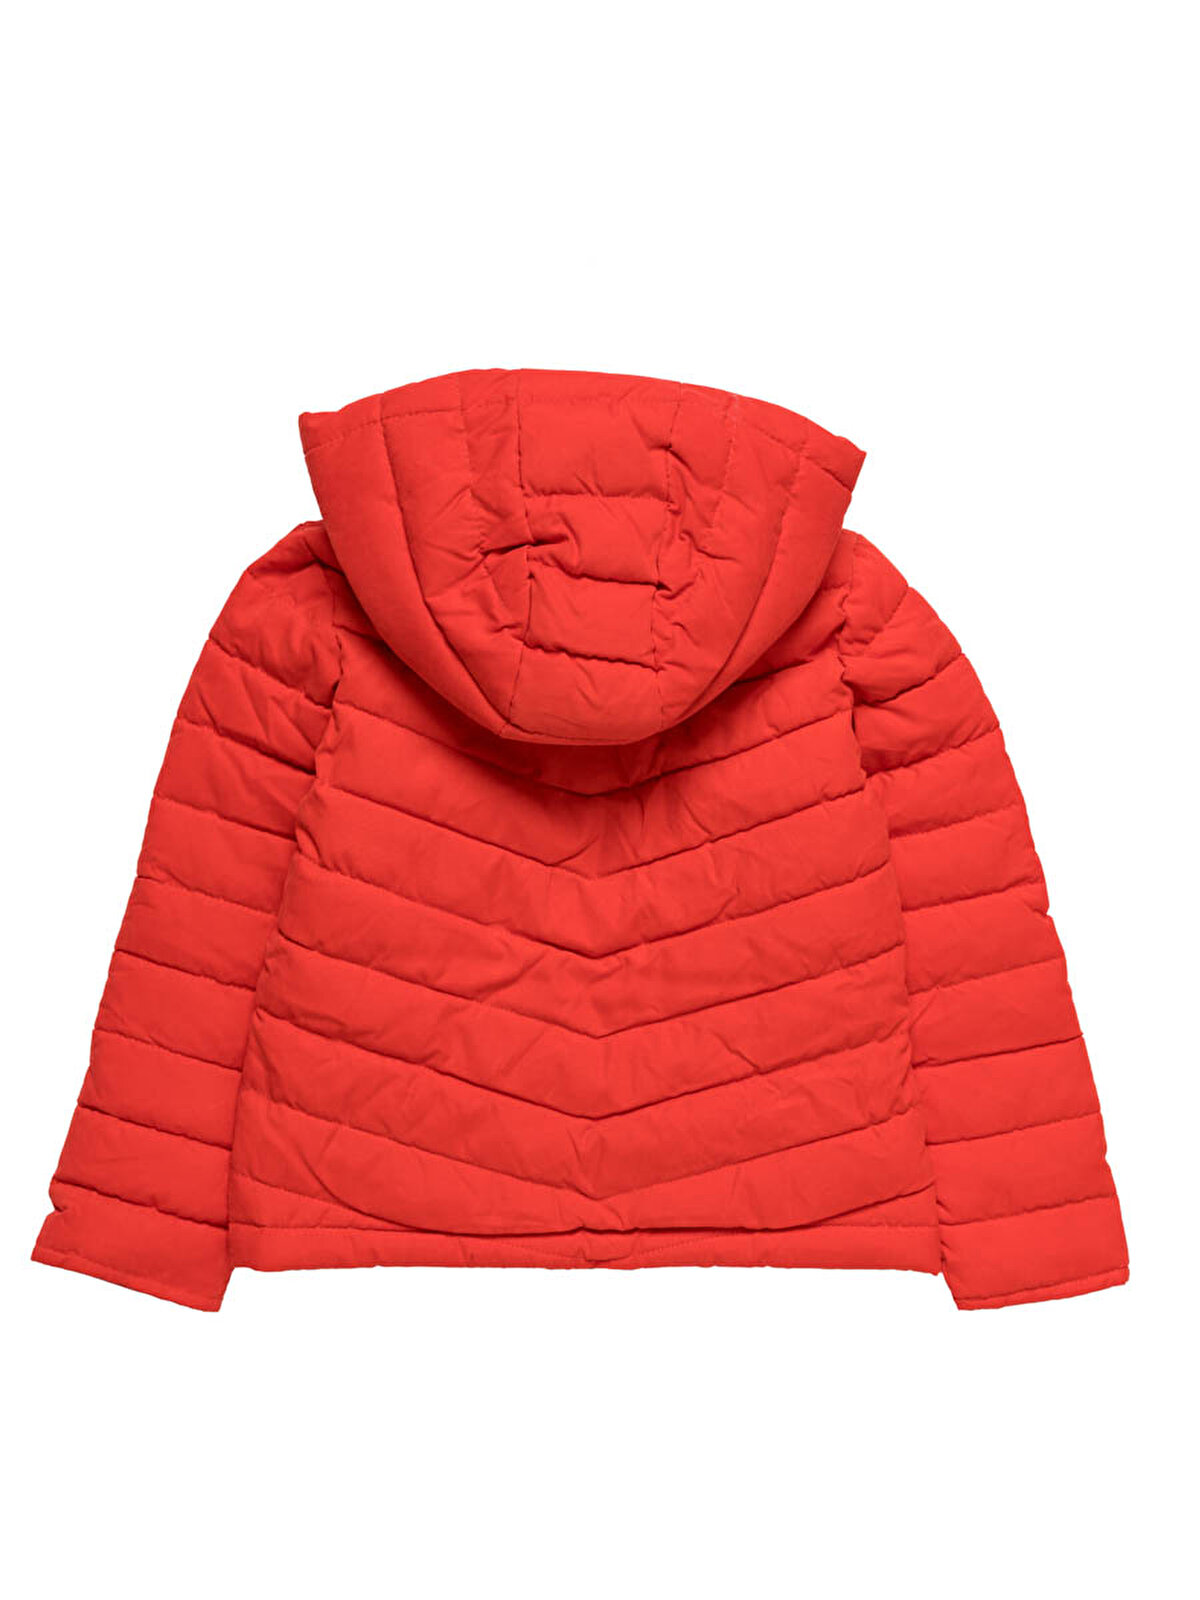 Red | Jackets & Coats | Girl | KIDS · Webshop FR